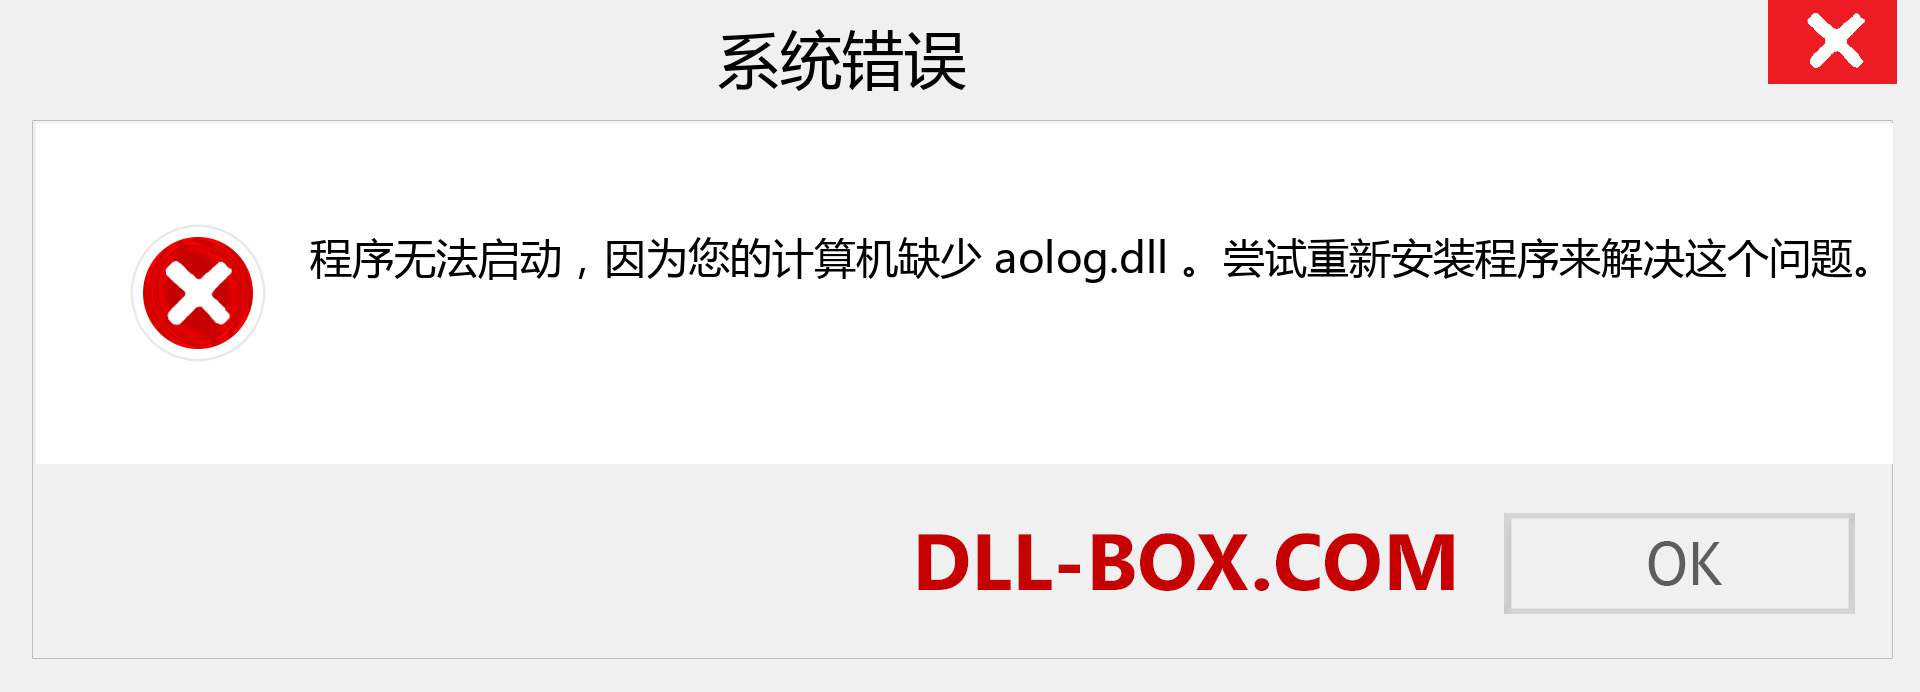 aolog.dll 文件丢失？。 适用于 Windows 7、8、10 的下载 - 修复 Windows、照片、图像上的 aolog dll 丢失错误